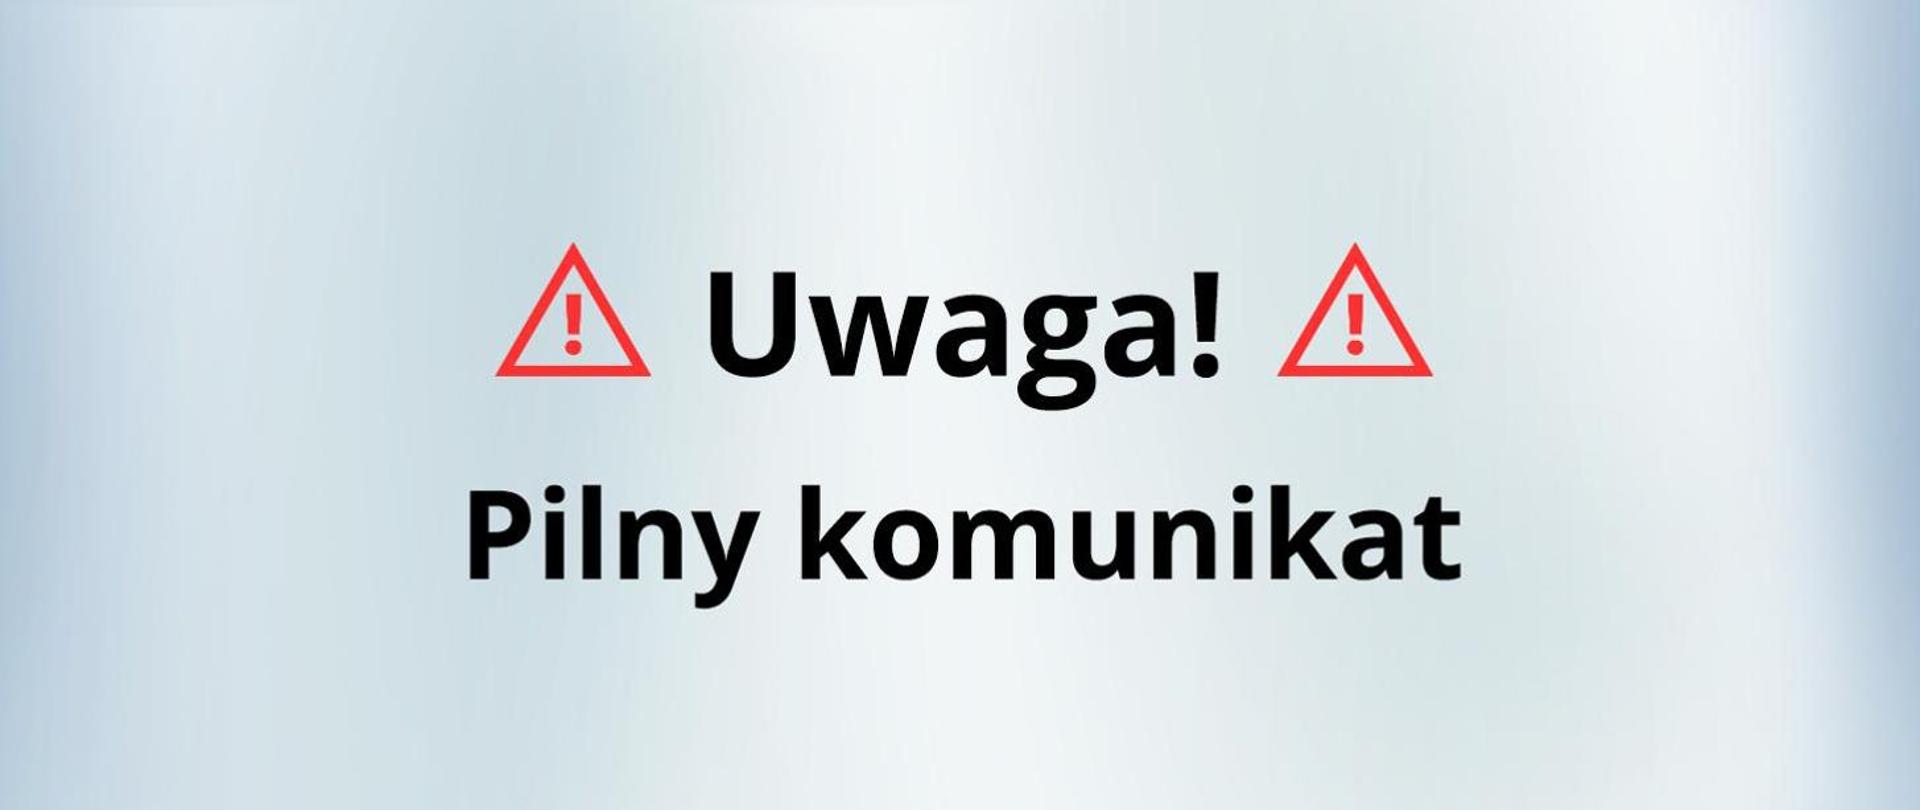 Grafika przedstawiająca napis "Uwaga. Pilny Komunikat" opatrzona dwoma czerwonymi trójkątami ostrzegawczymi